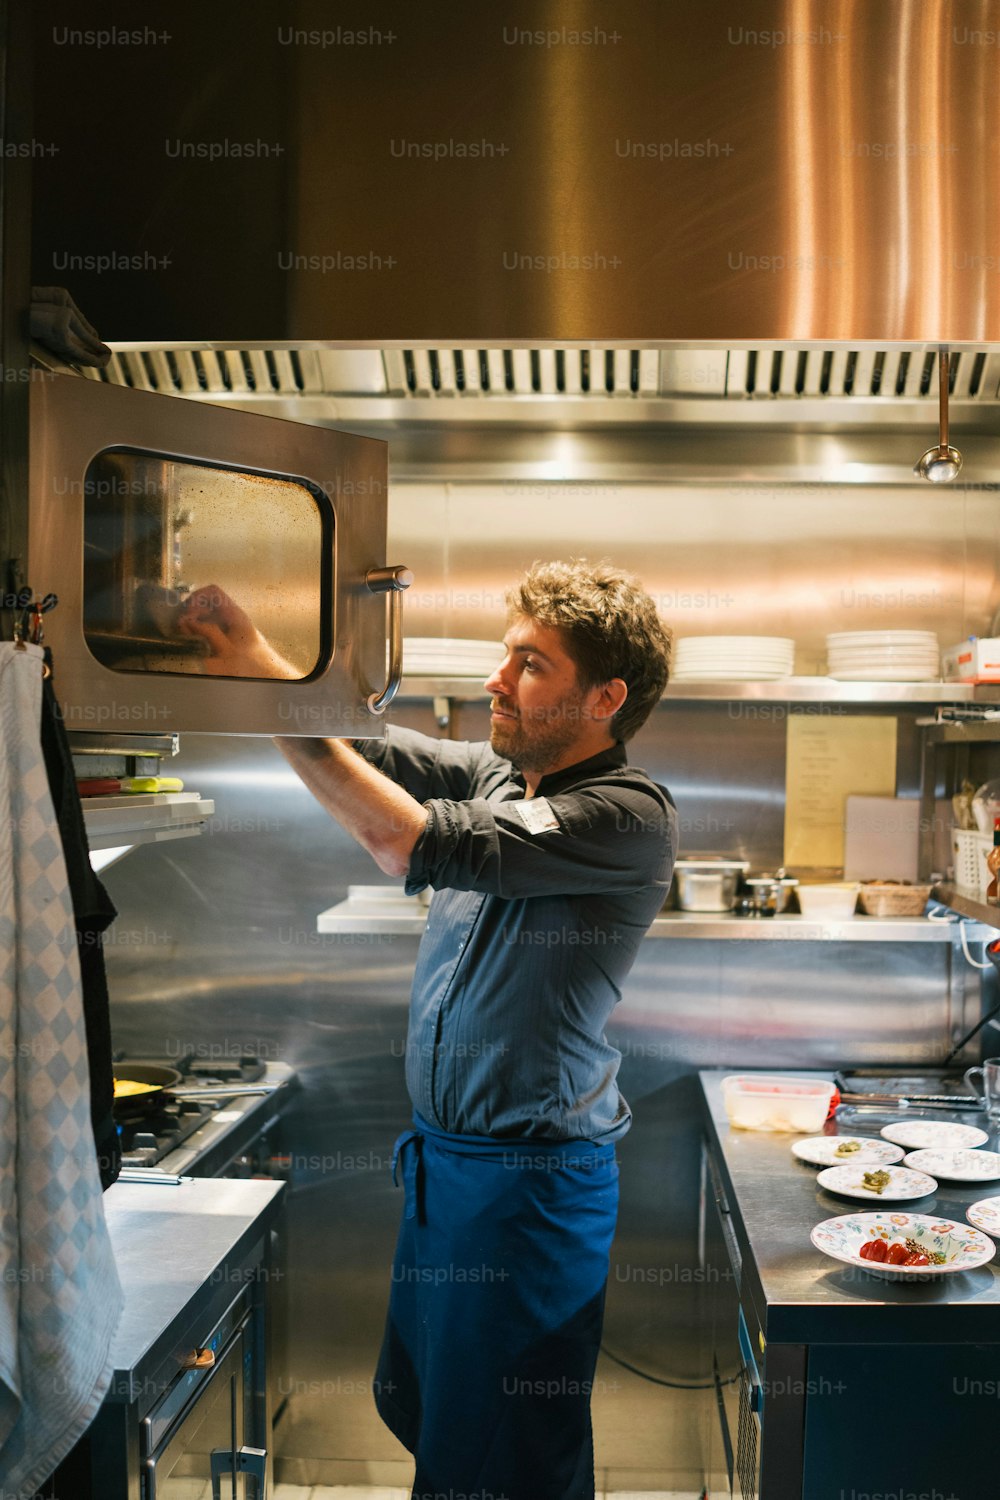 Un homme dans une cuisine tenant un four grille-pain